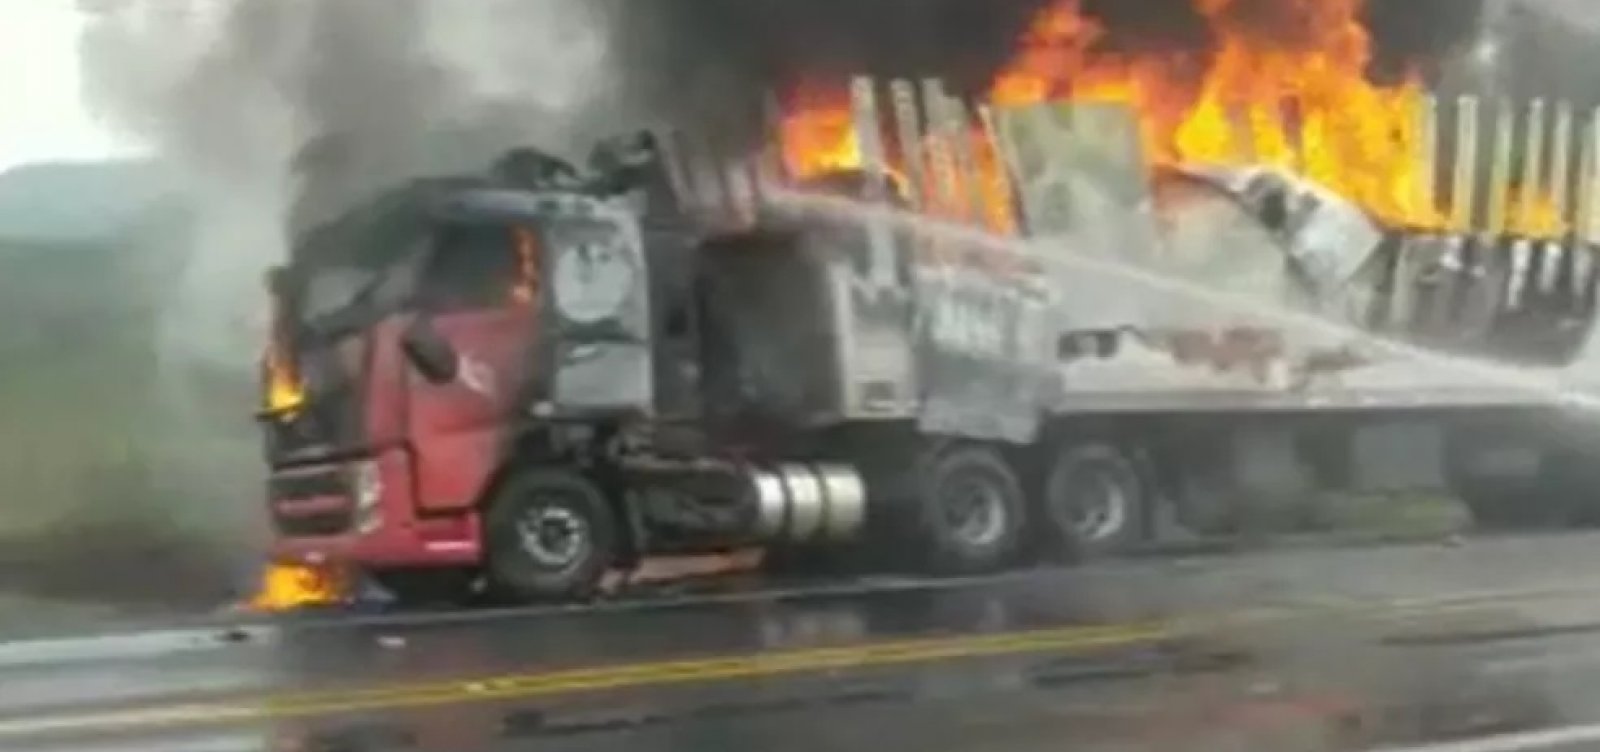 Carregado de pneus, caminhão pega fogo na BR-116